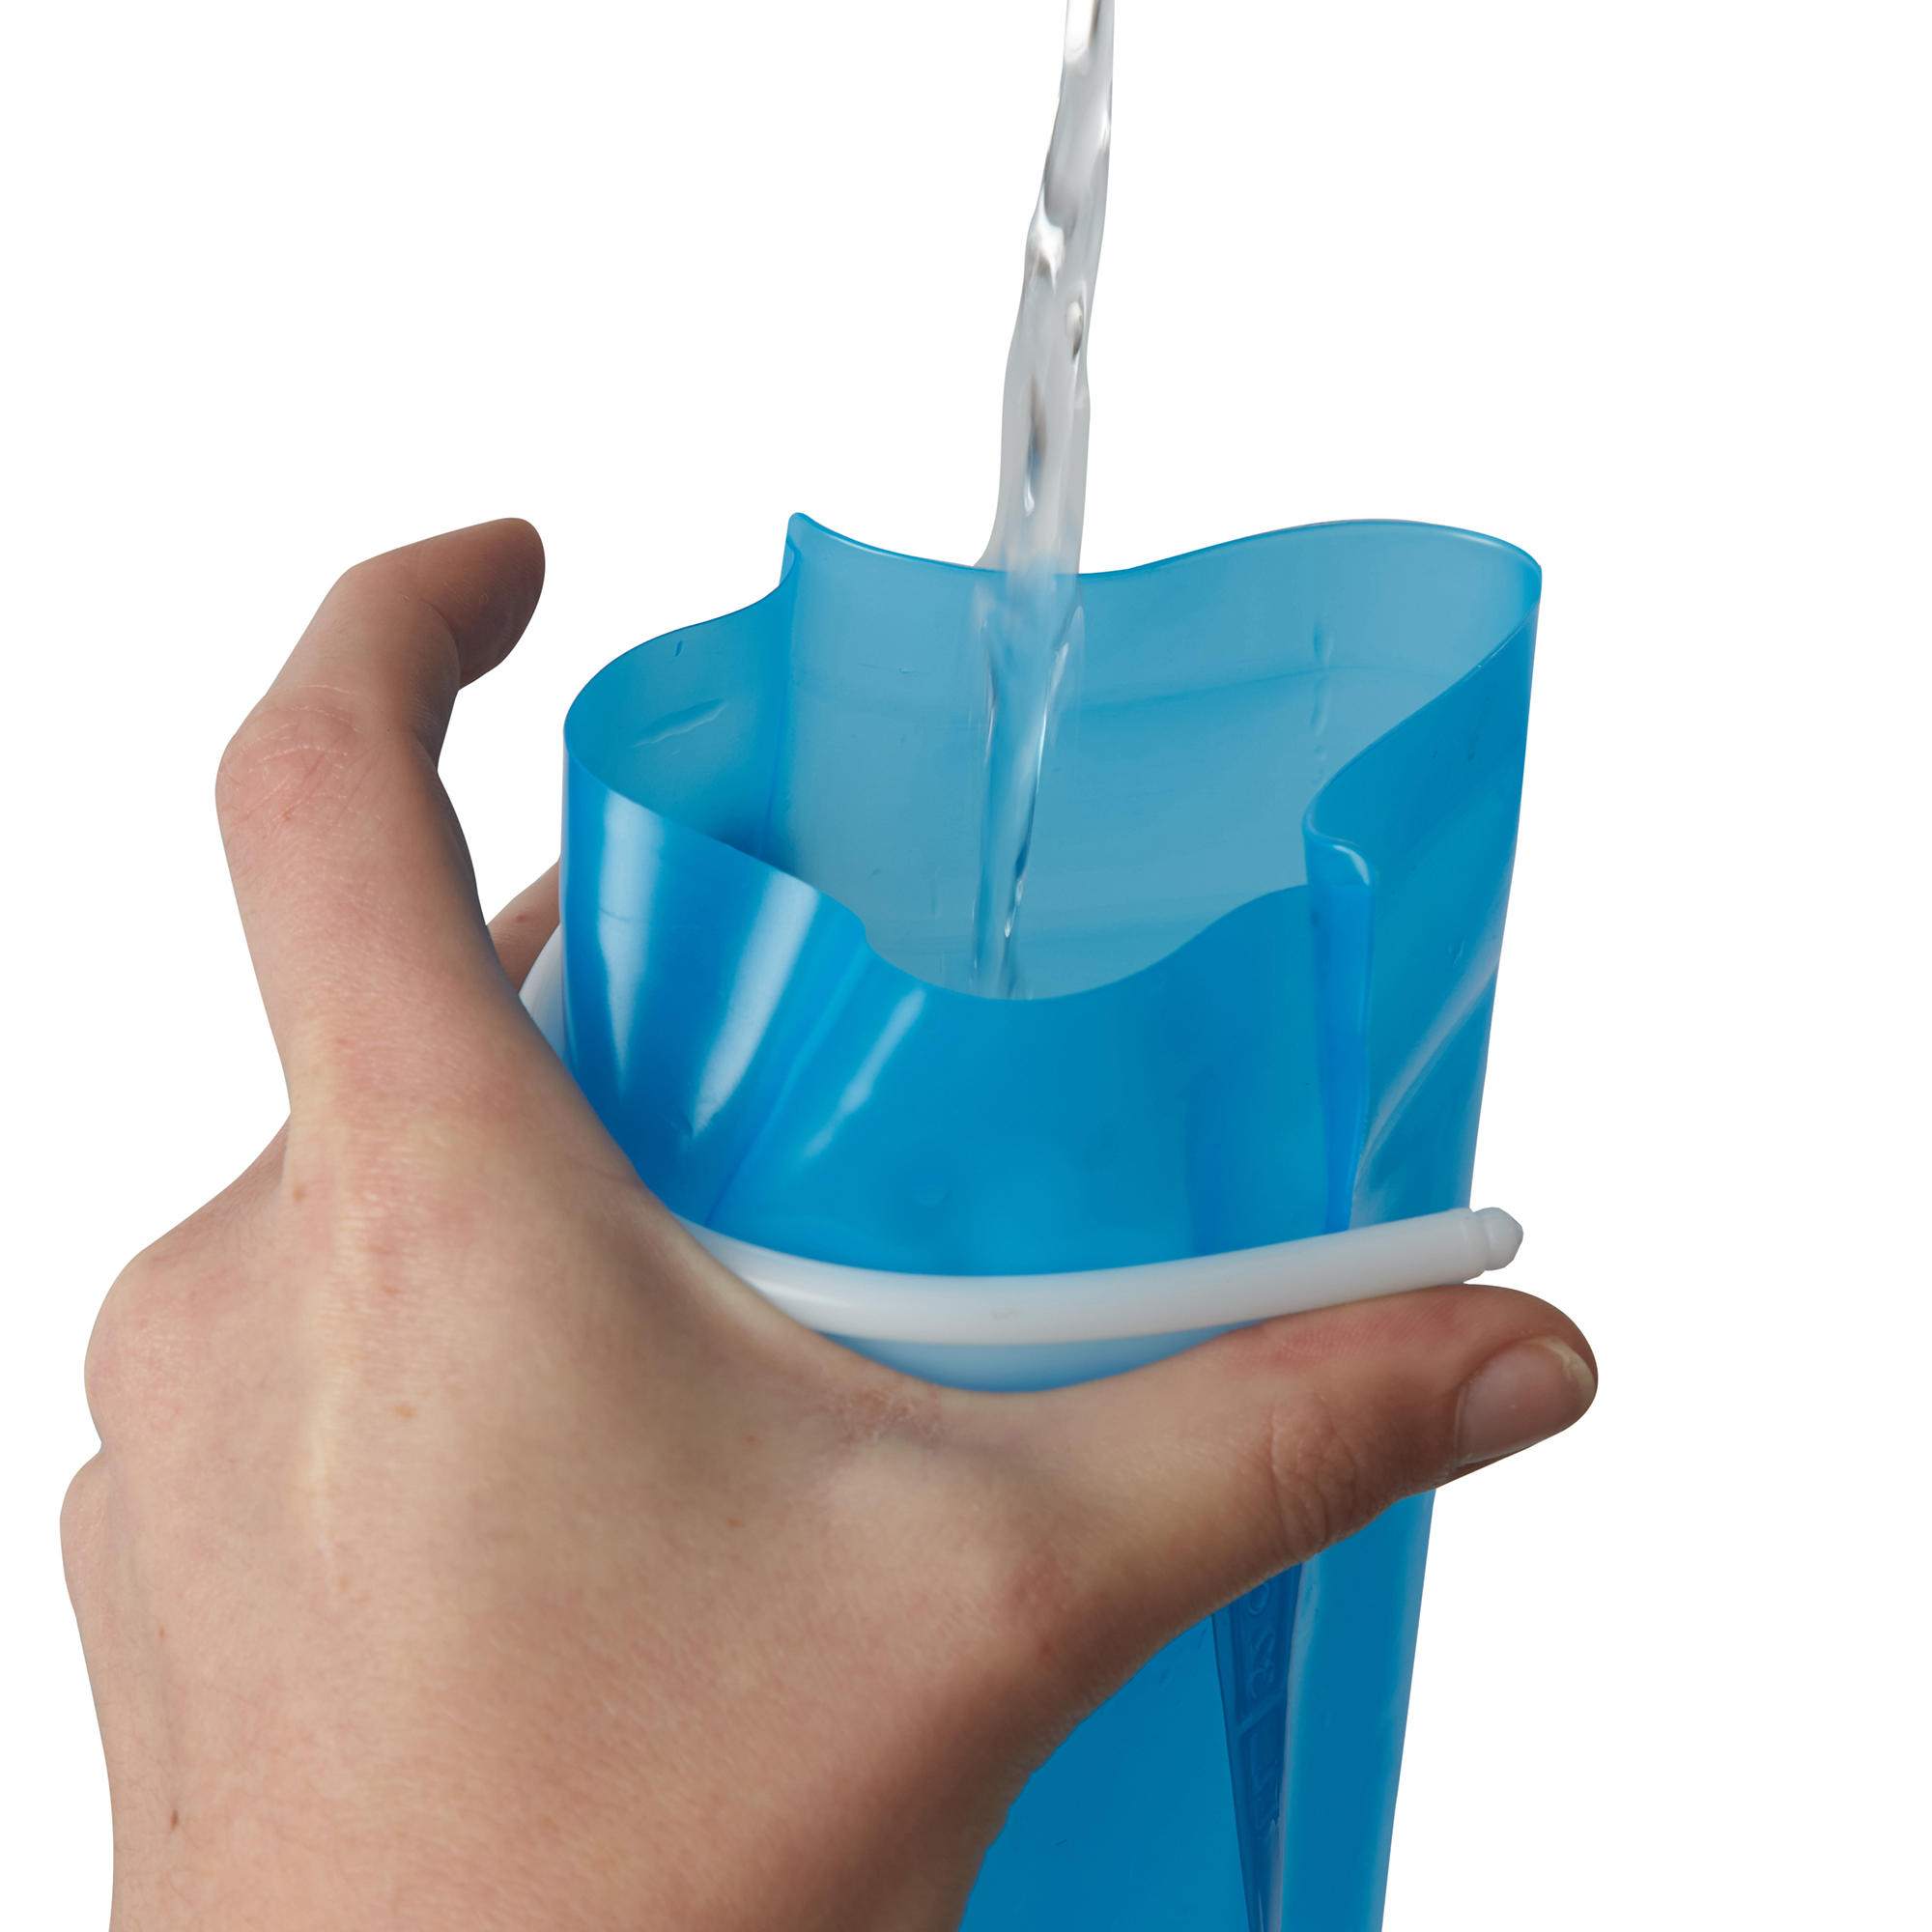 hydration bladder decathlon